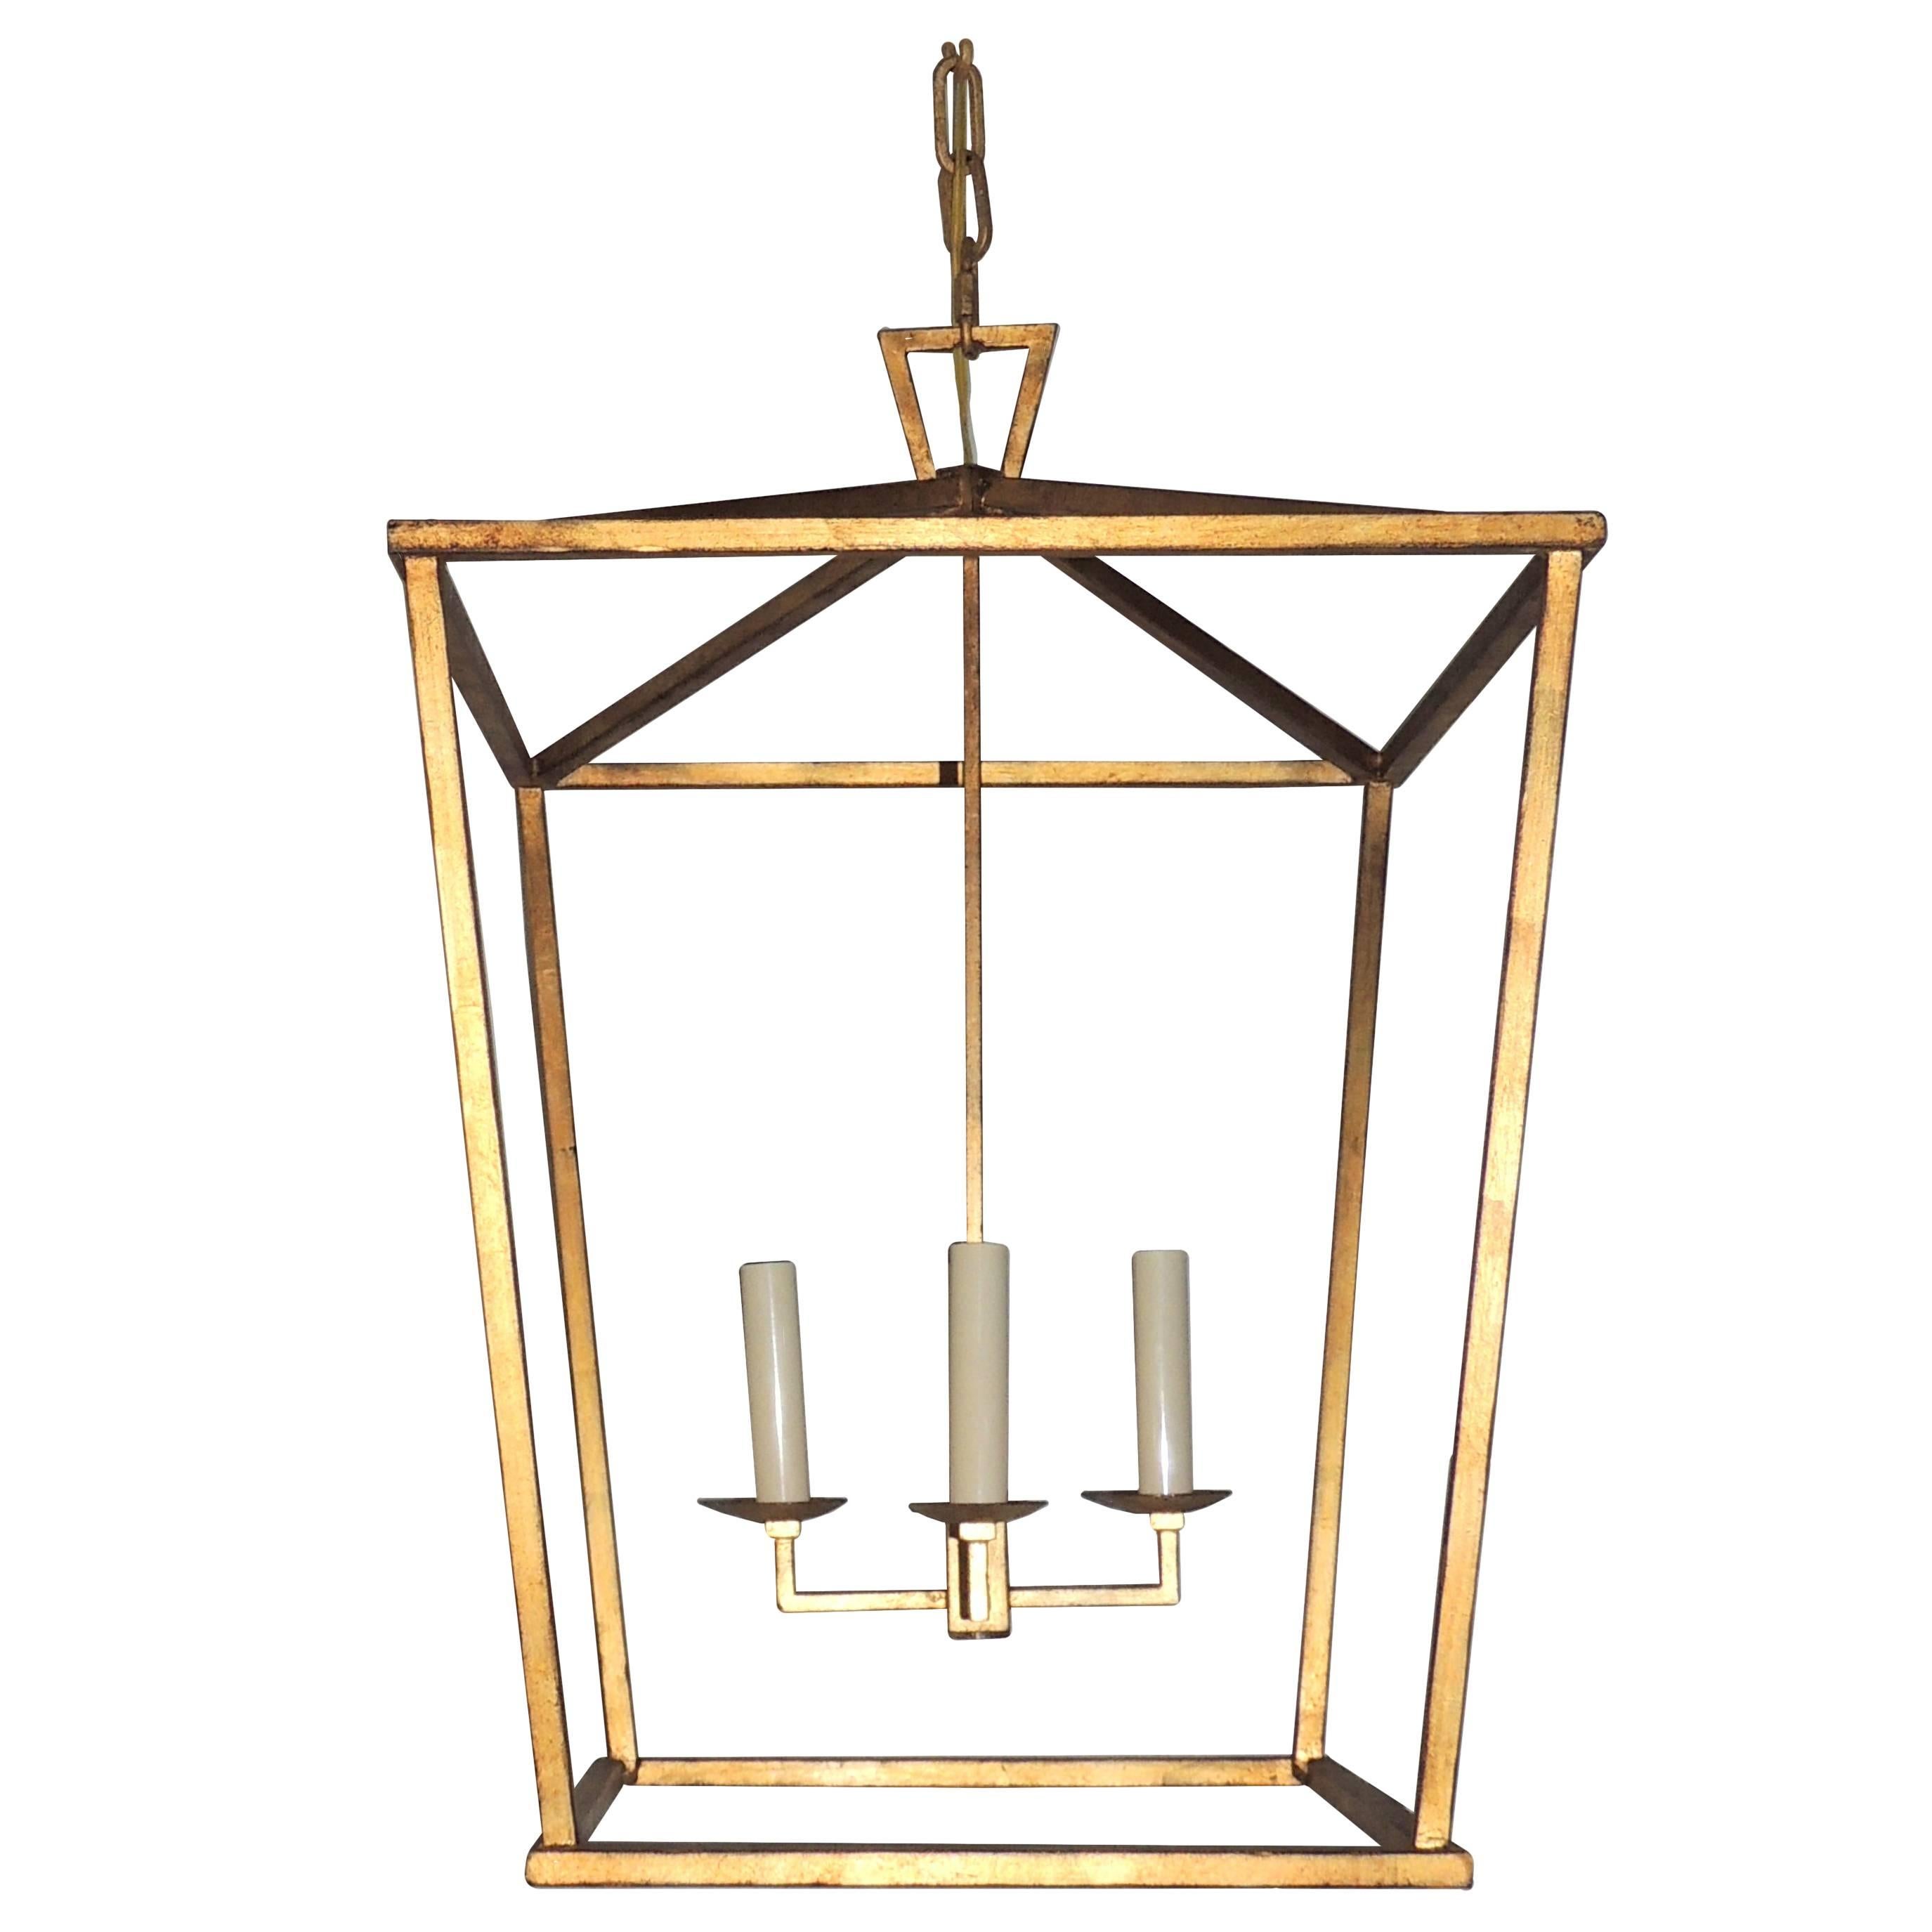 Merveilleux ensemble de trois grandes lampes à suspension modernes transitionnelles dorées en forme de lanternes